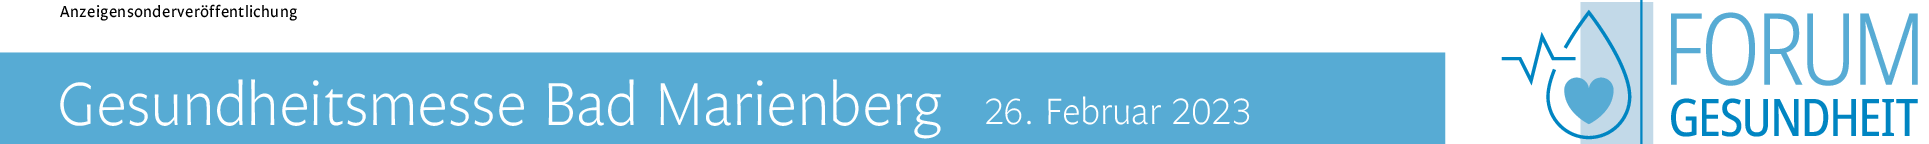 Leichter Leben Wochen 2023 in Bad Marienberg vom 22. Februar bis 14. April